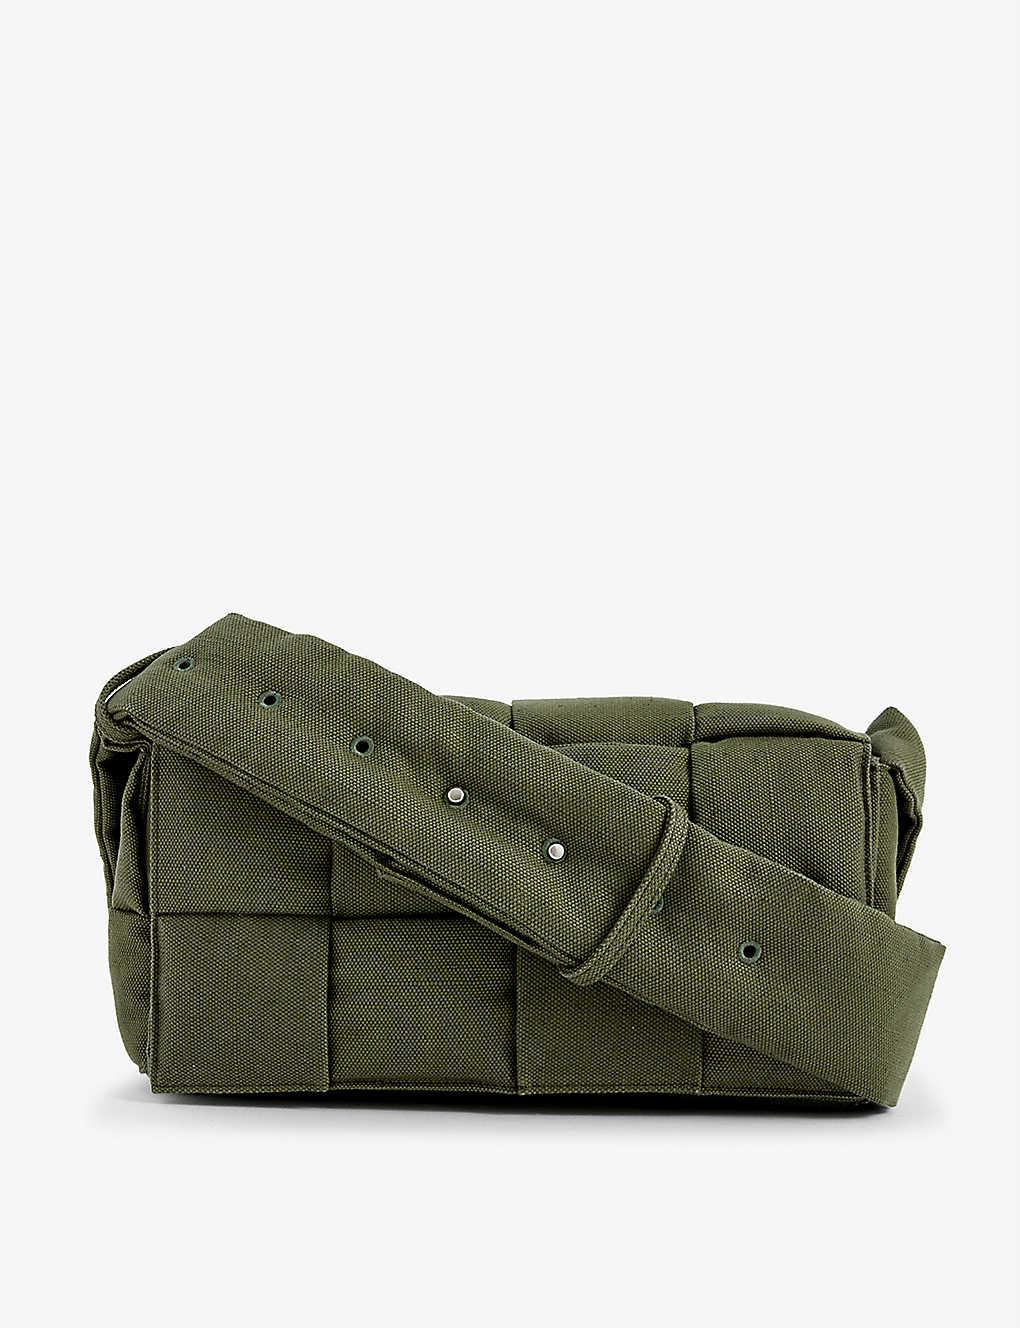 Bottega Veneta Cassette Intrecciato Woven Cross-body Bag in Green for Men